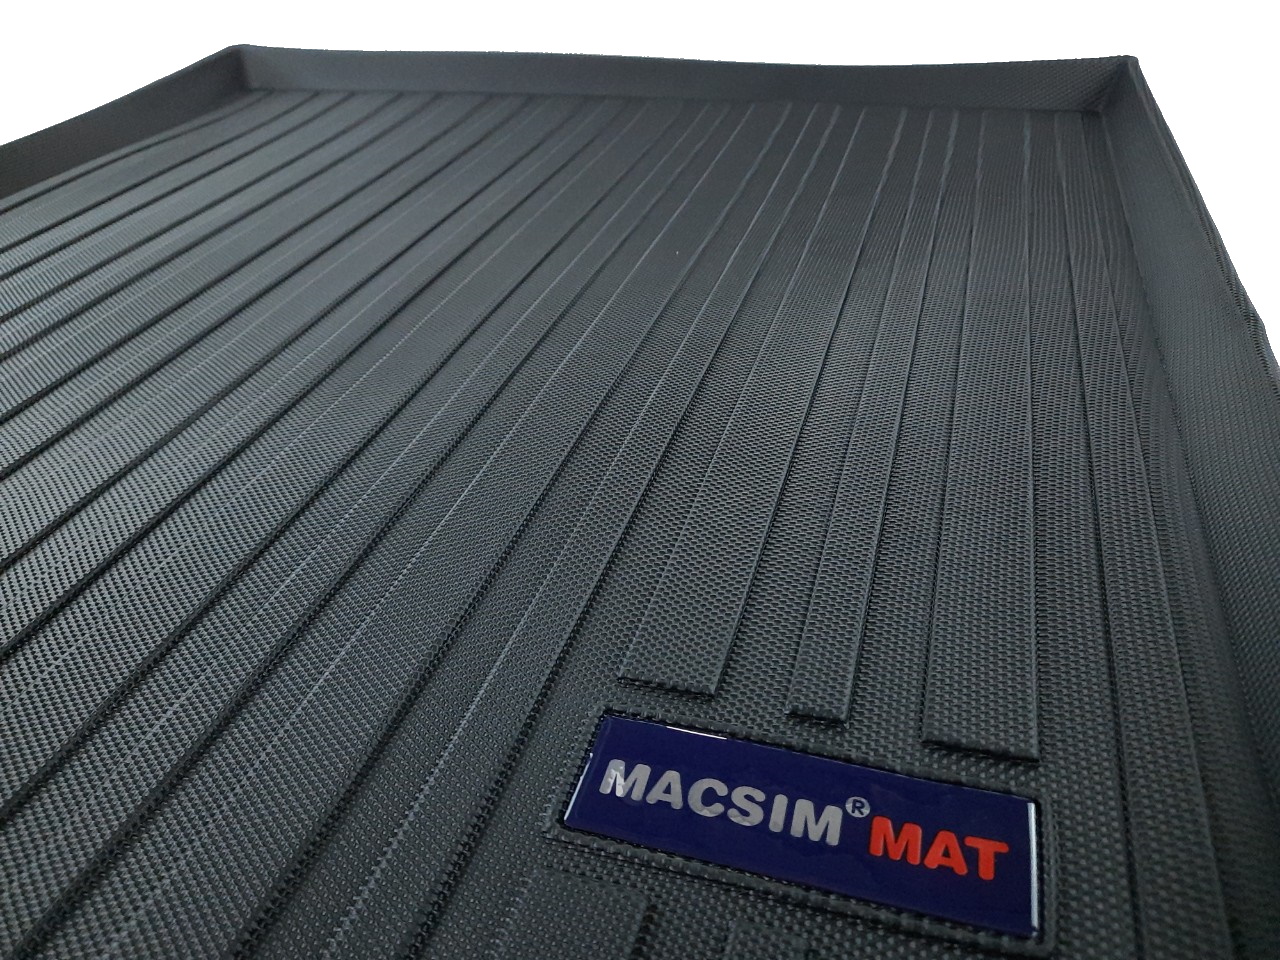 Thảm lót cốp xe ô tô dành cho Audi A5 2012-2017 nhãn hiệu Macsim chất liệu TPV cao cấp màu be(191)